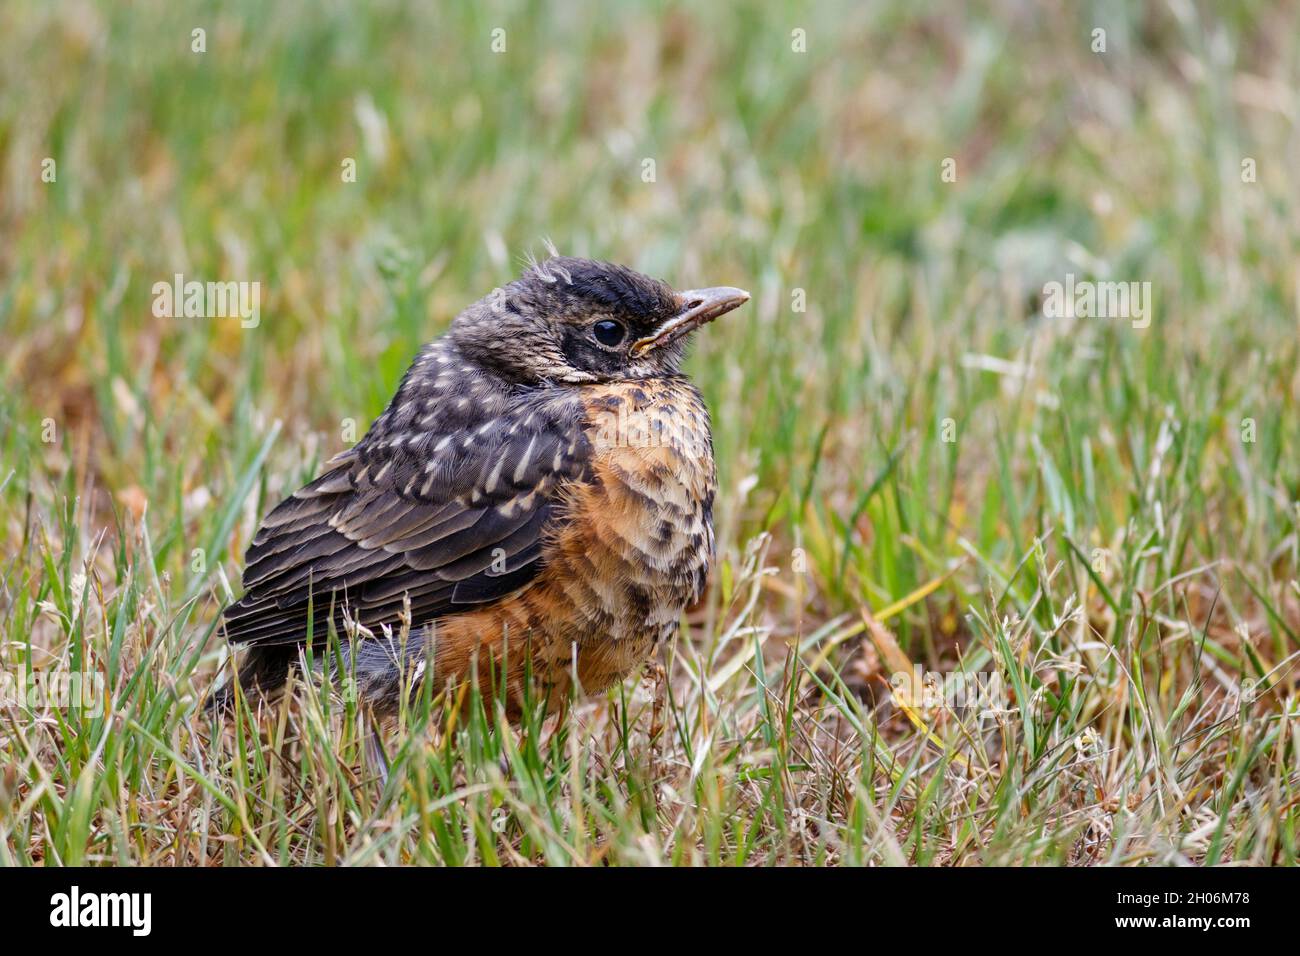 Un alert American Robin que sale del nido está en un césped desordenado, sus plumas de vuelo todavía cortas y plumaje ruffled (vista a nivel de los ojos). Foto de stock